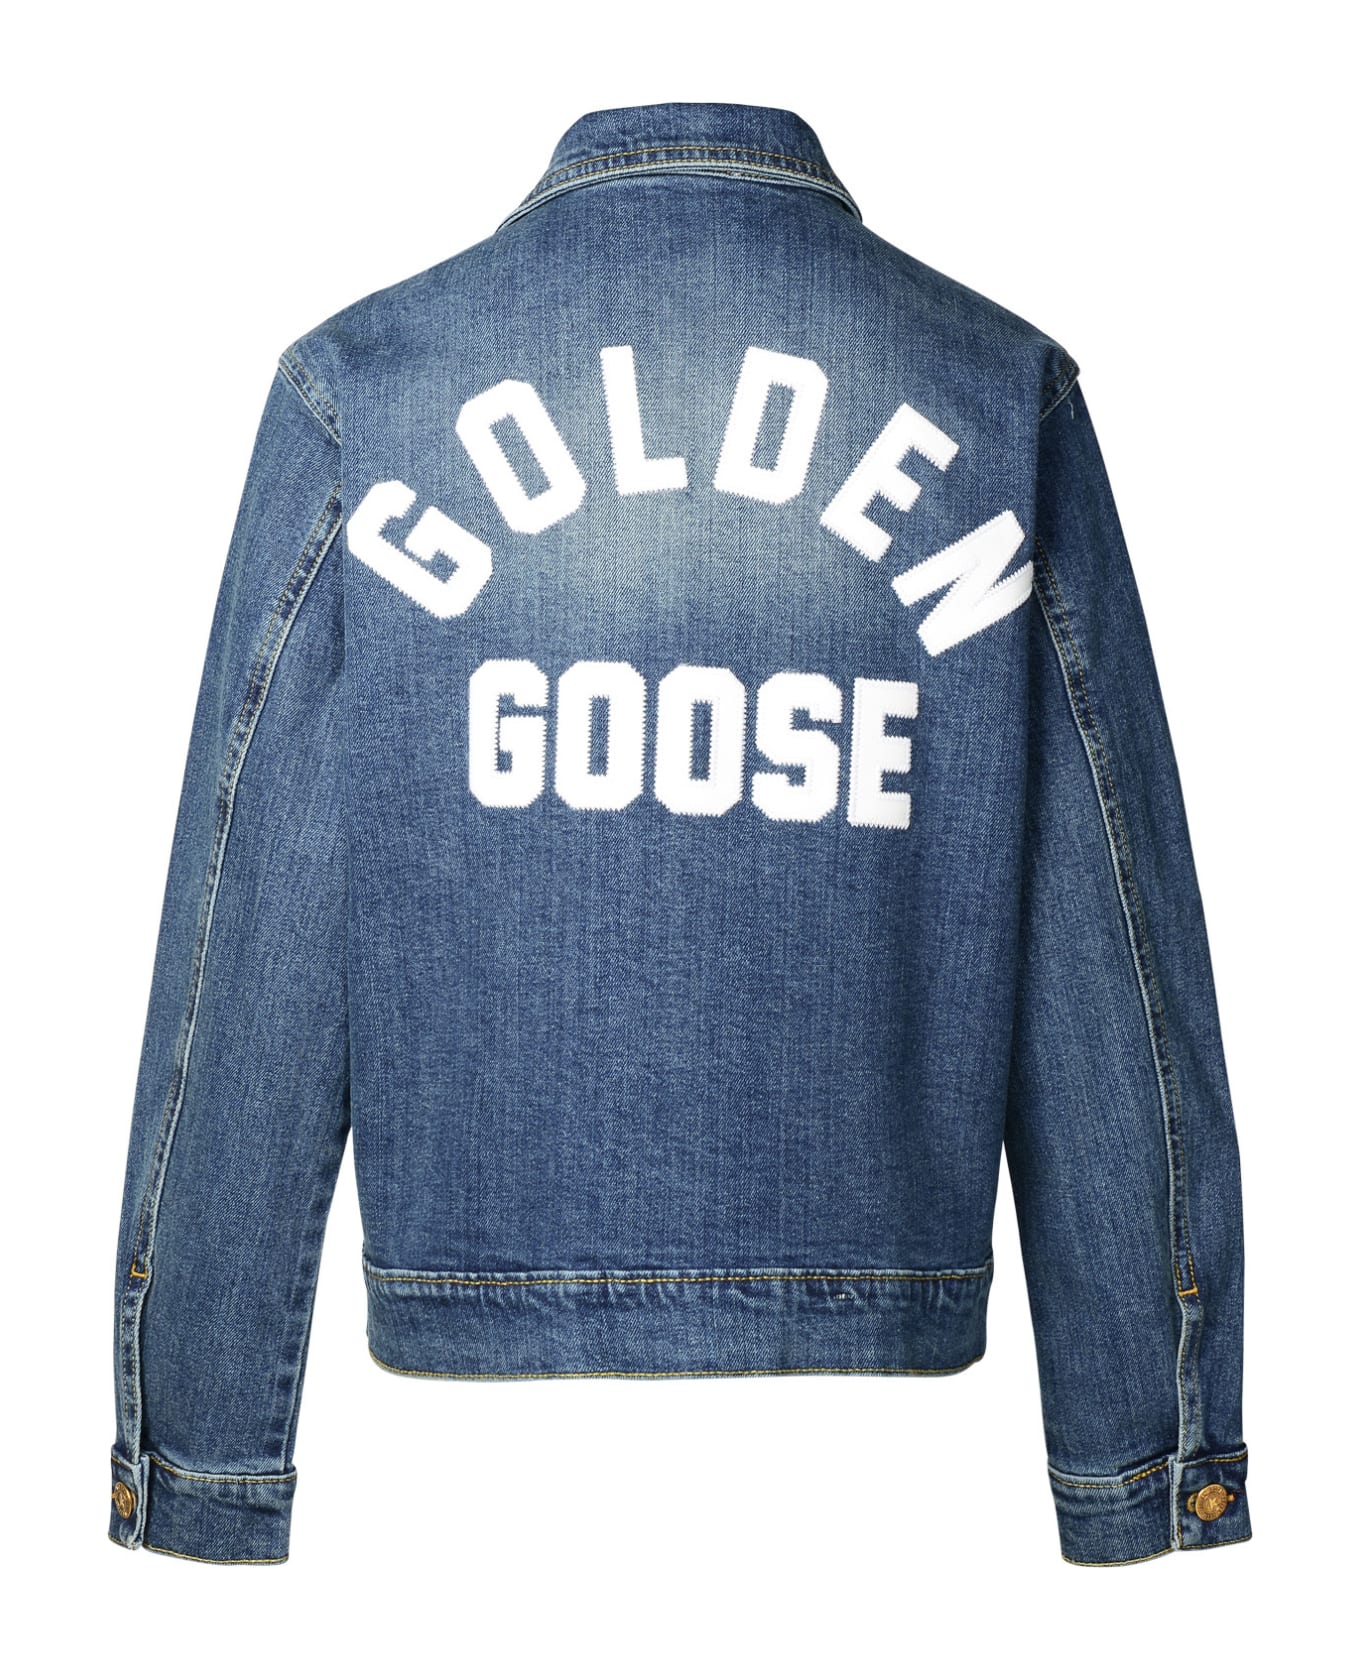 Golden Goose Blue Denim Jacket - Denim